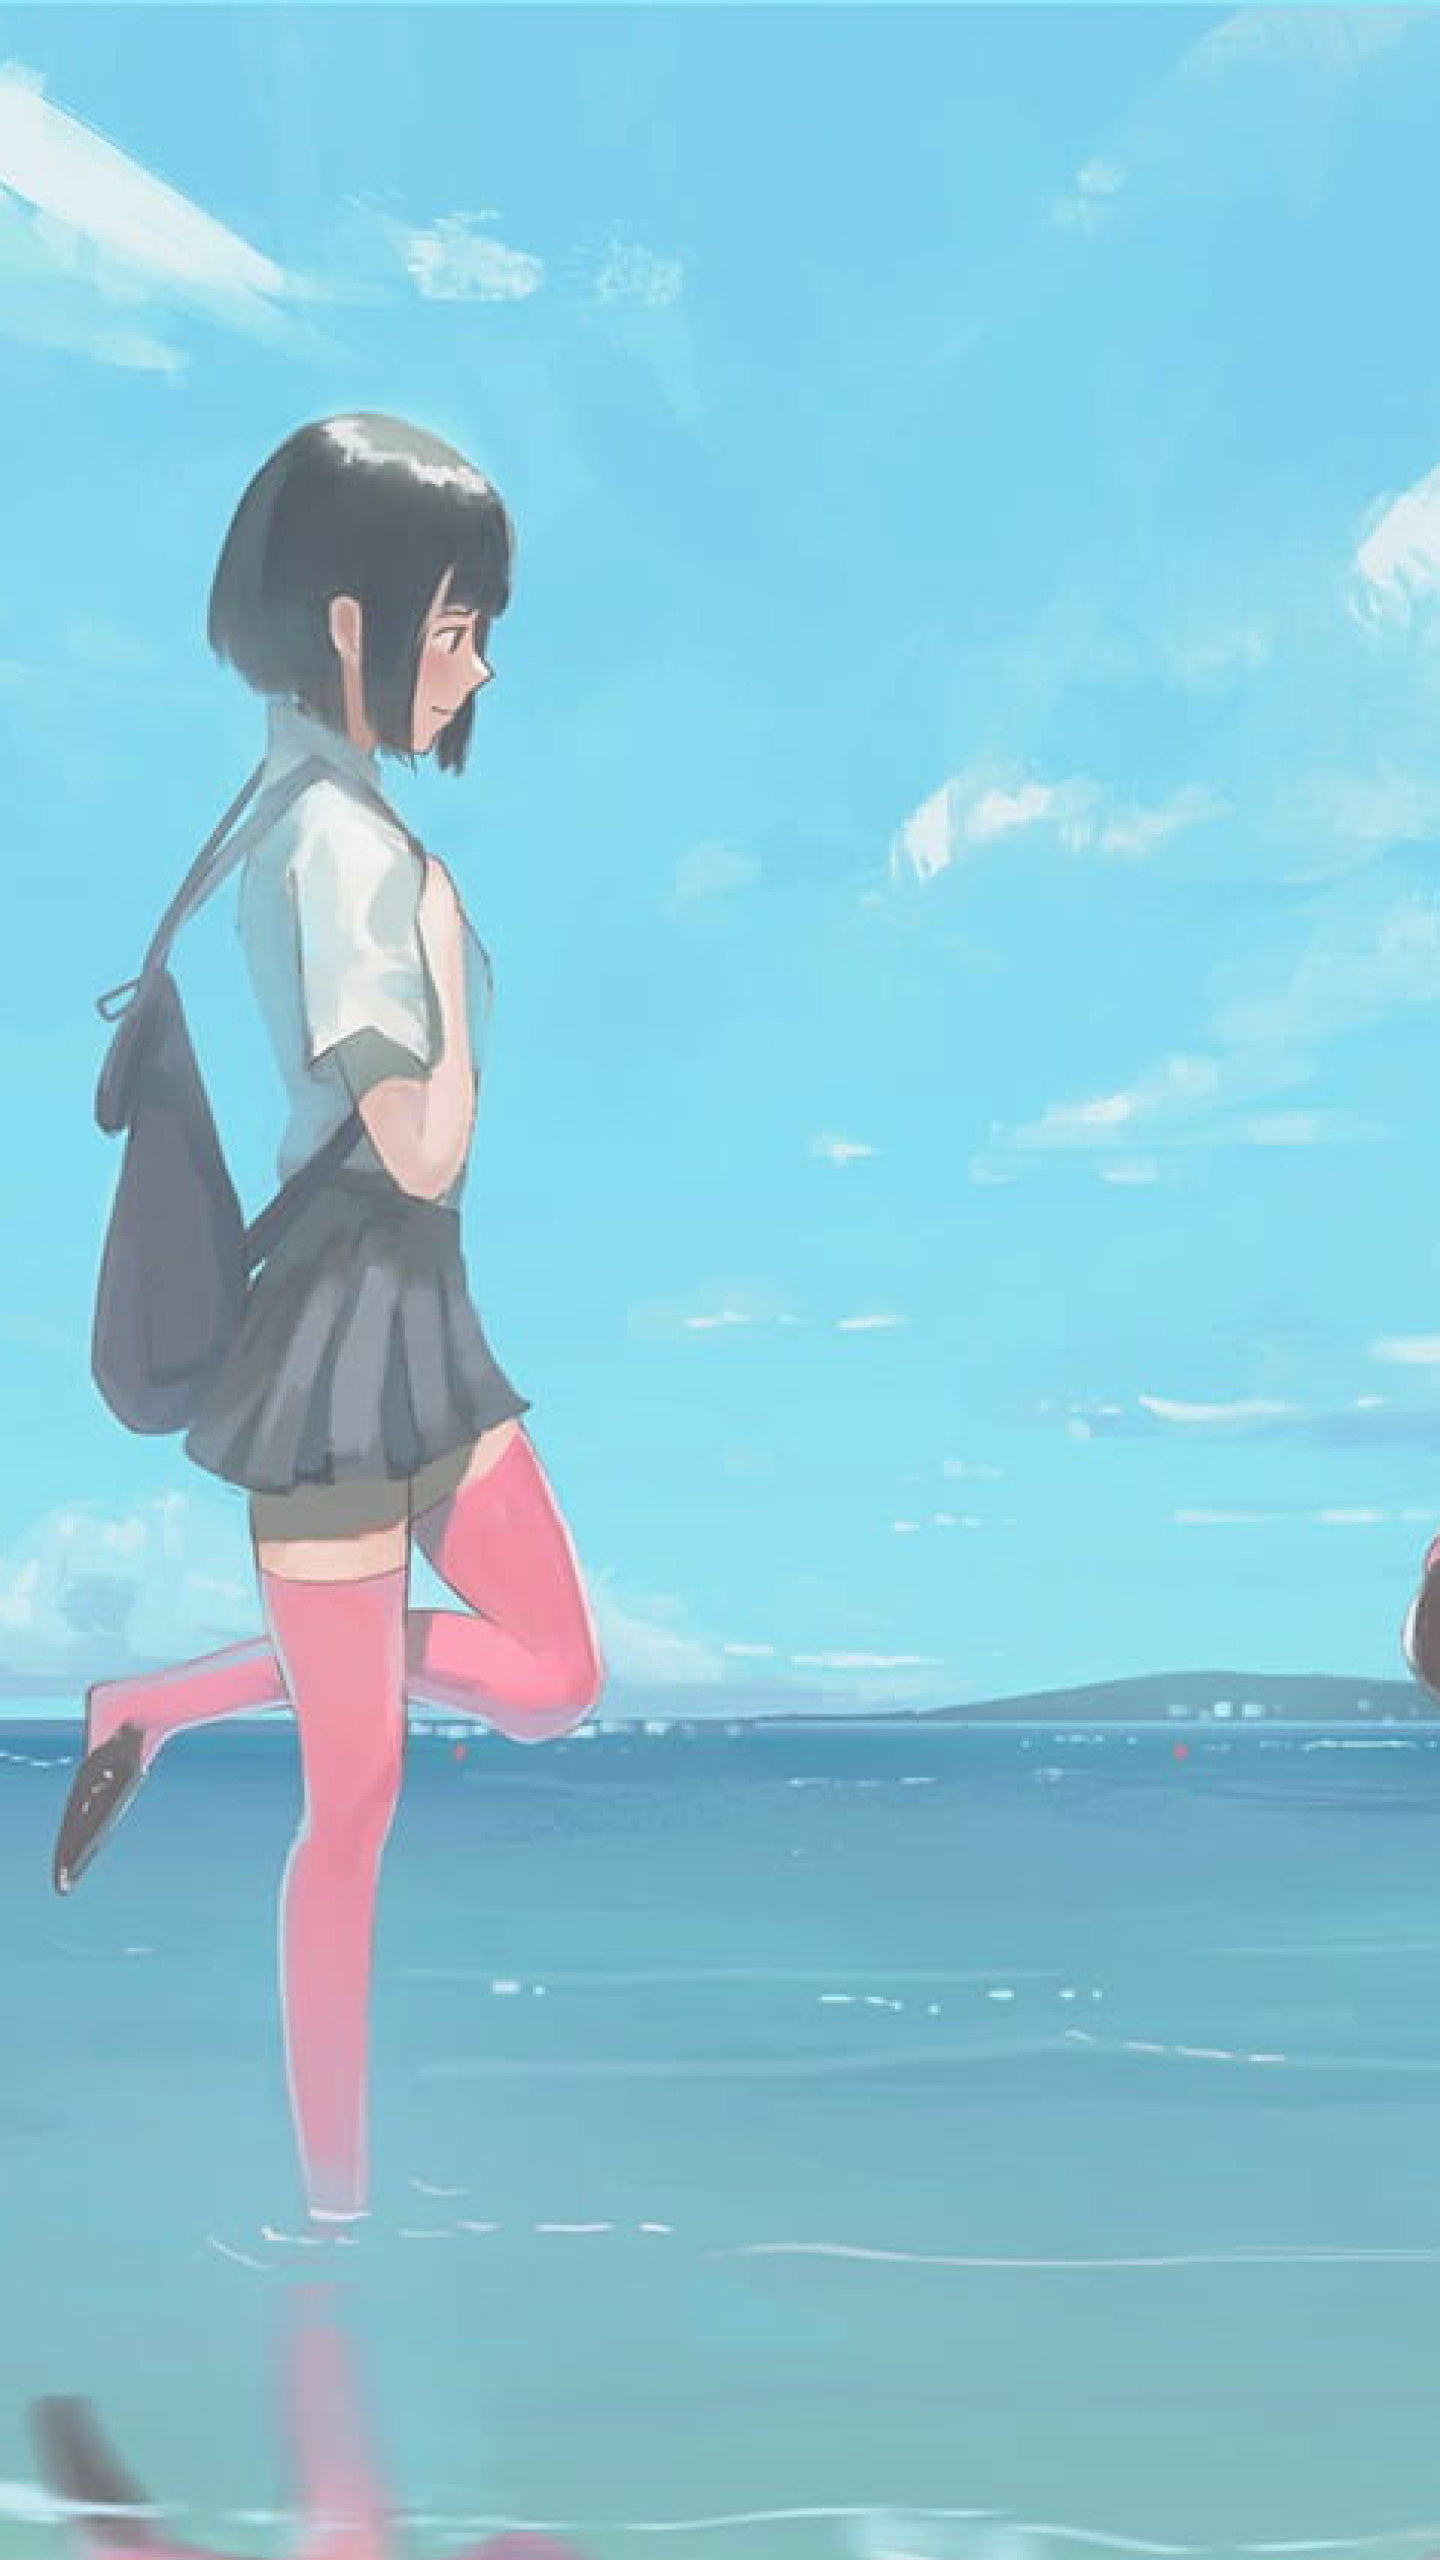 Wallpaper Anime Girls, Short Hair, School Uniform, Flamingo • Wallpaper For You HD Wallpaper For Desktop & Mobile